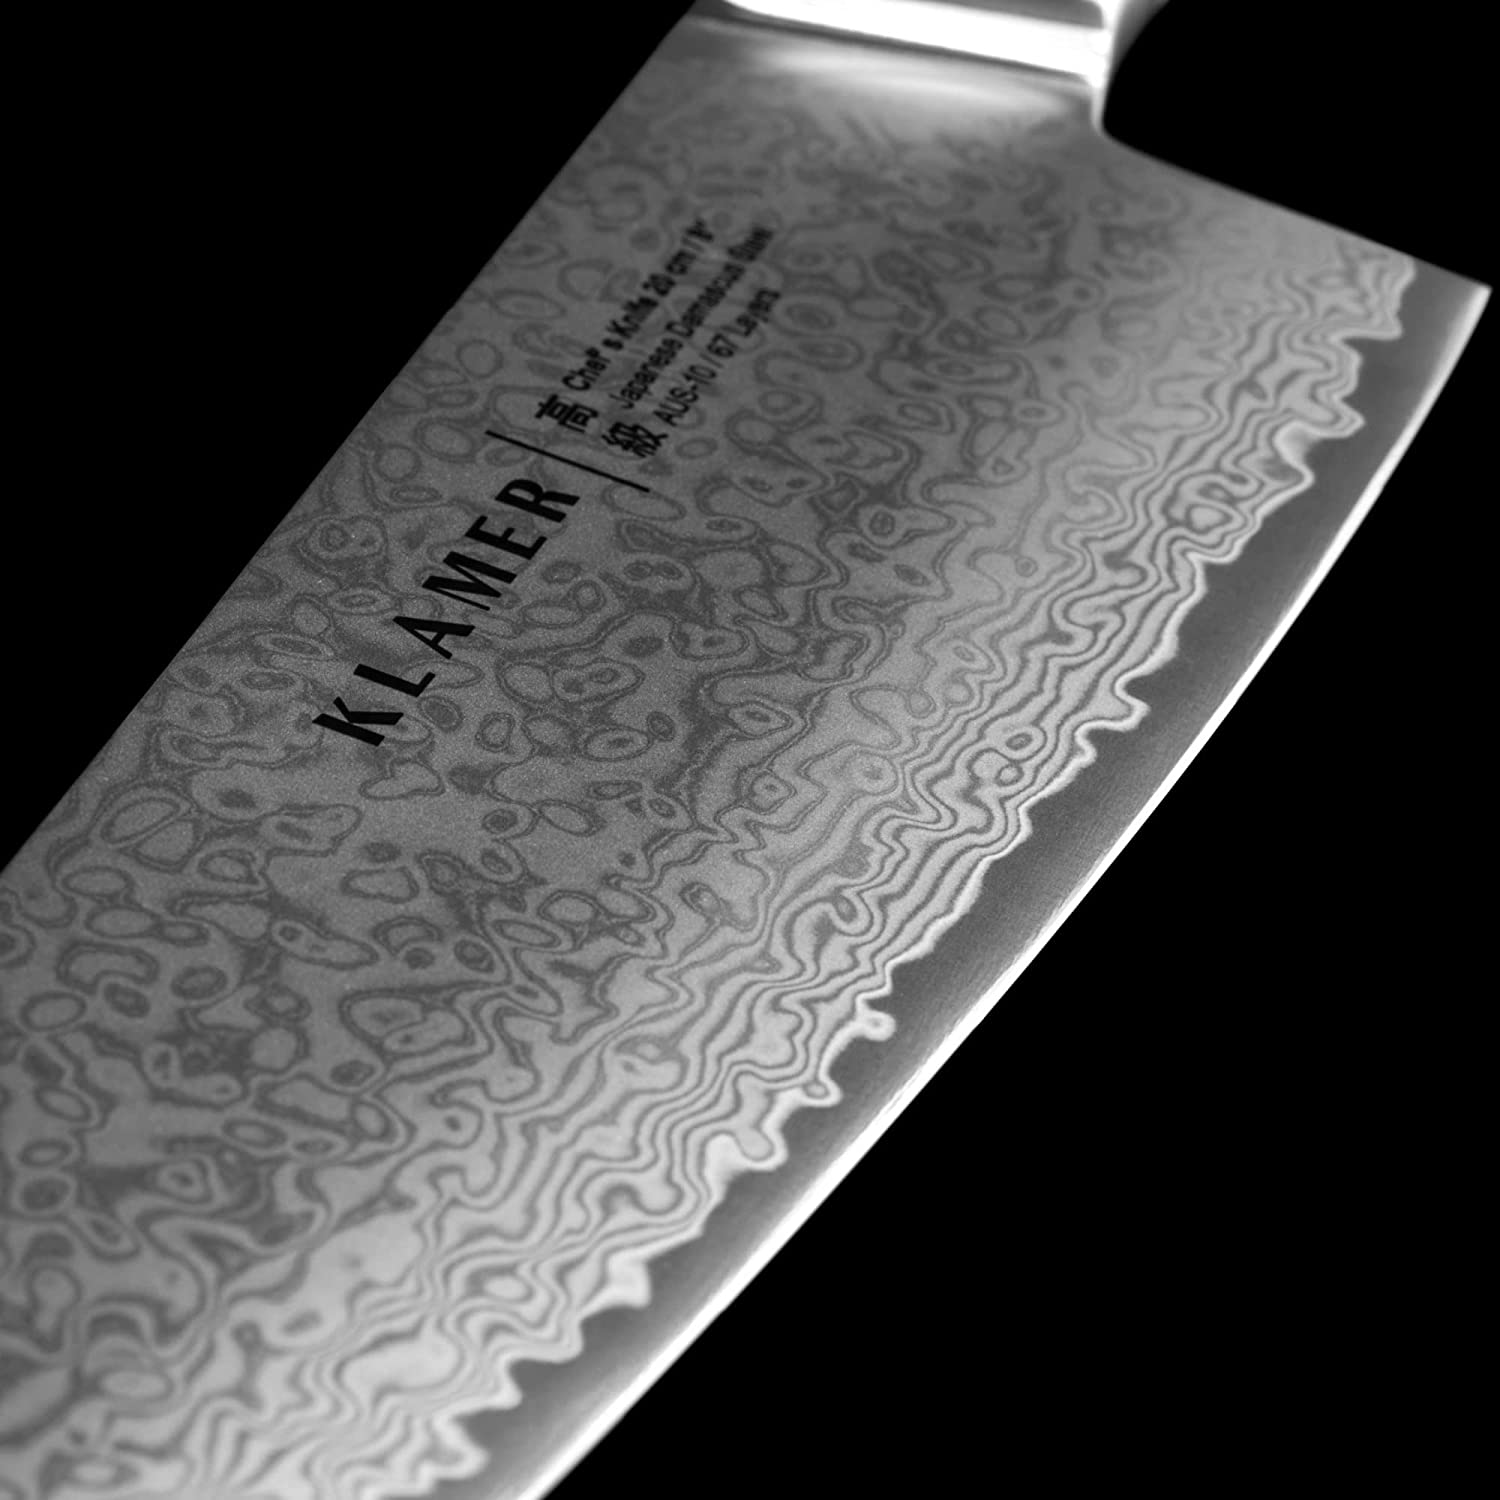 KLAMER Damast Chefmesser 20cm Olivenholz Messer mit